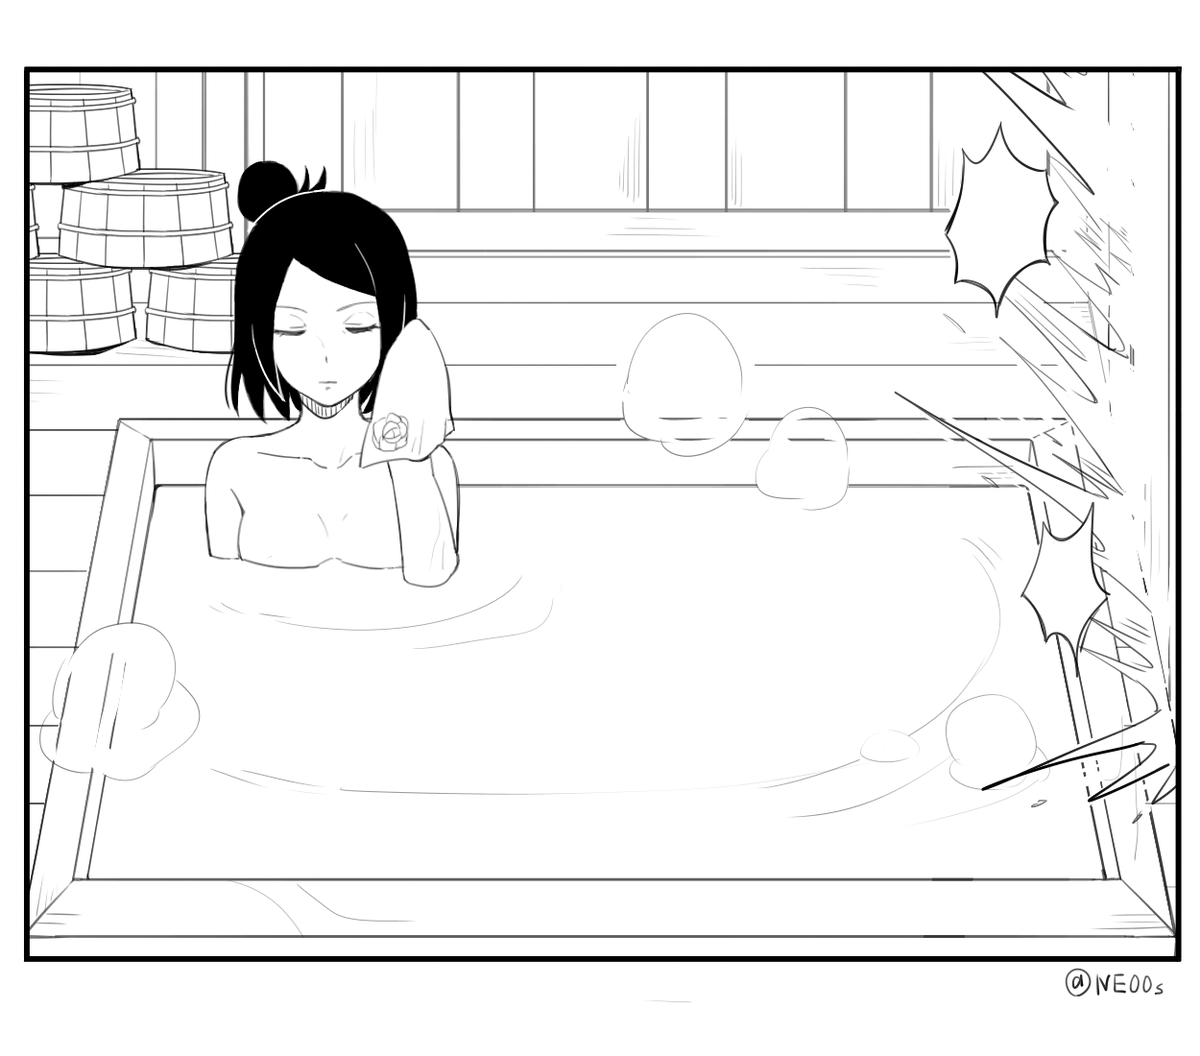 【NRT】風呂に入る暁 